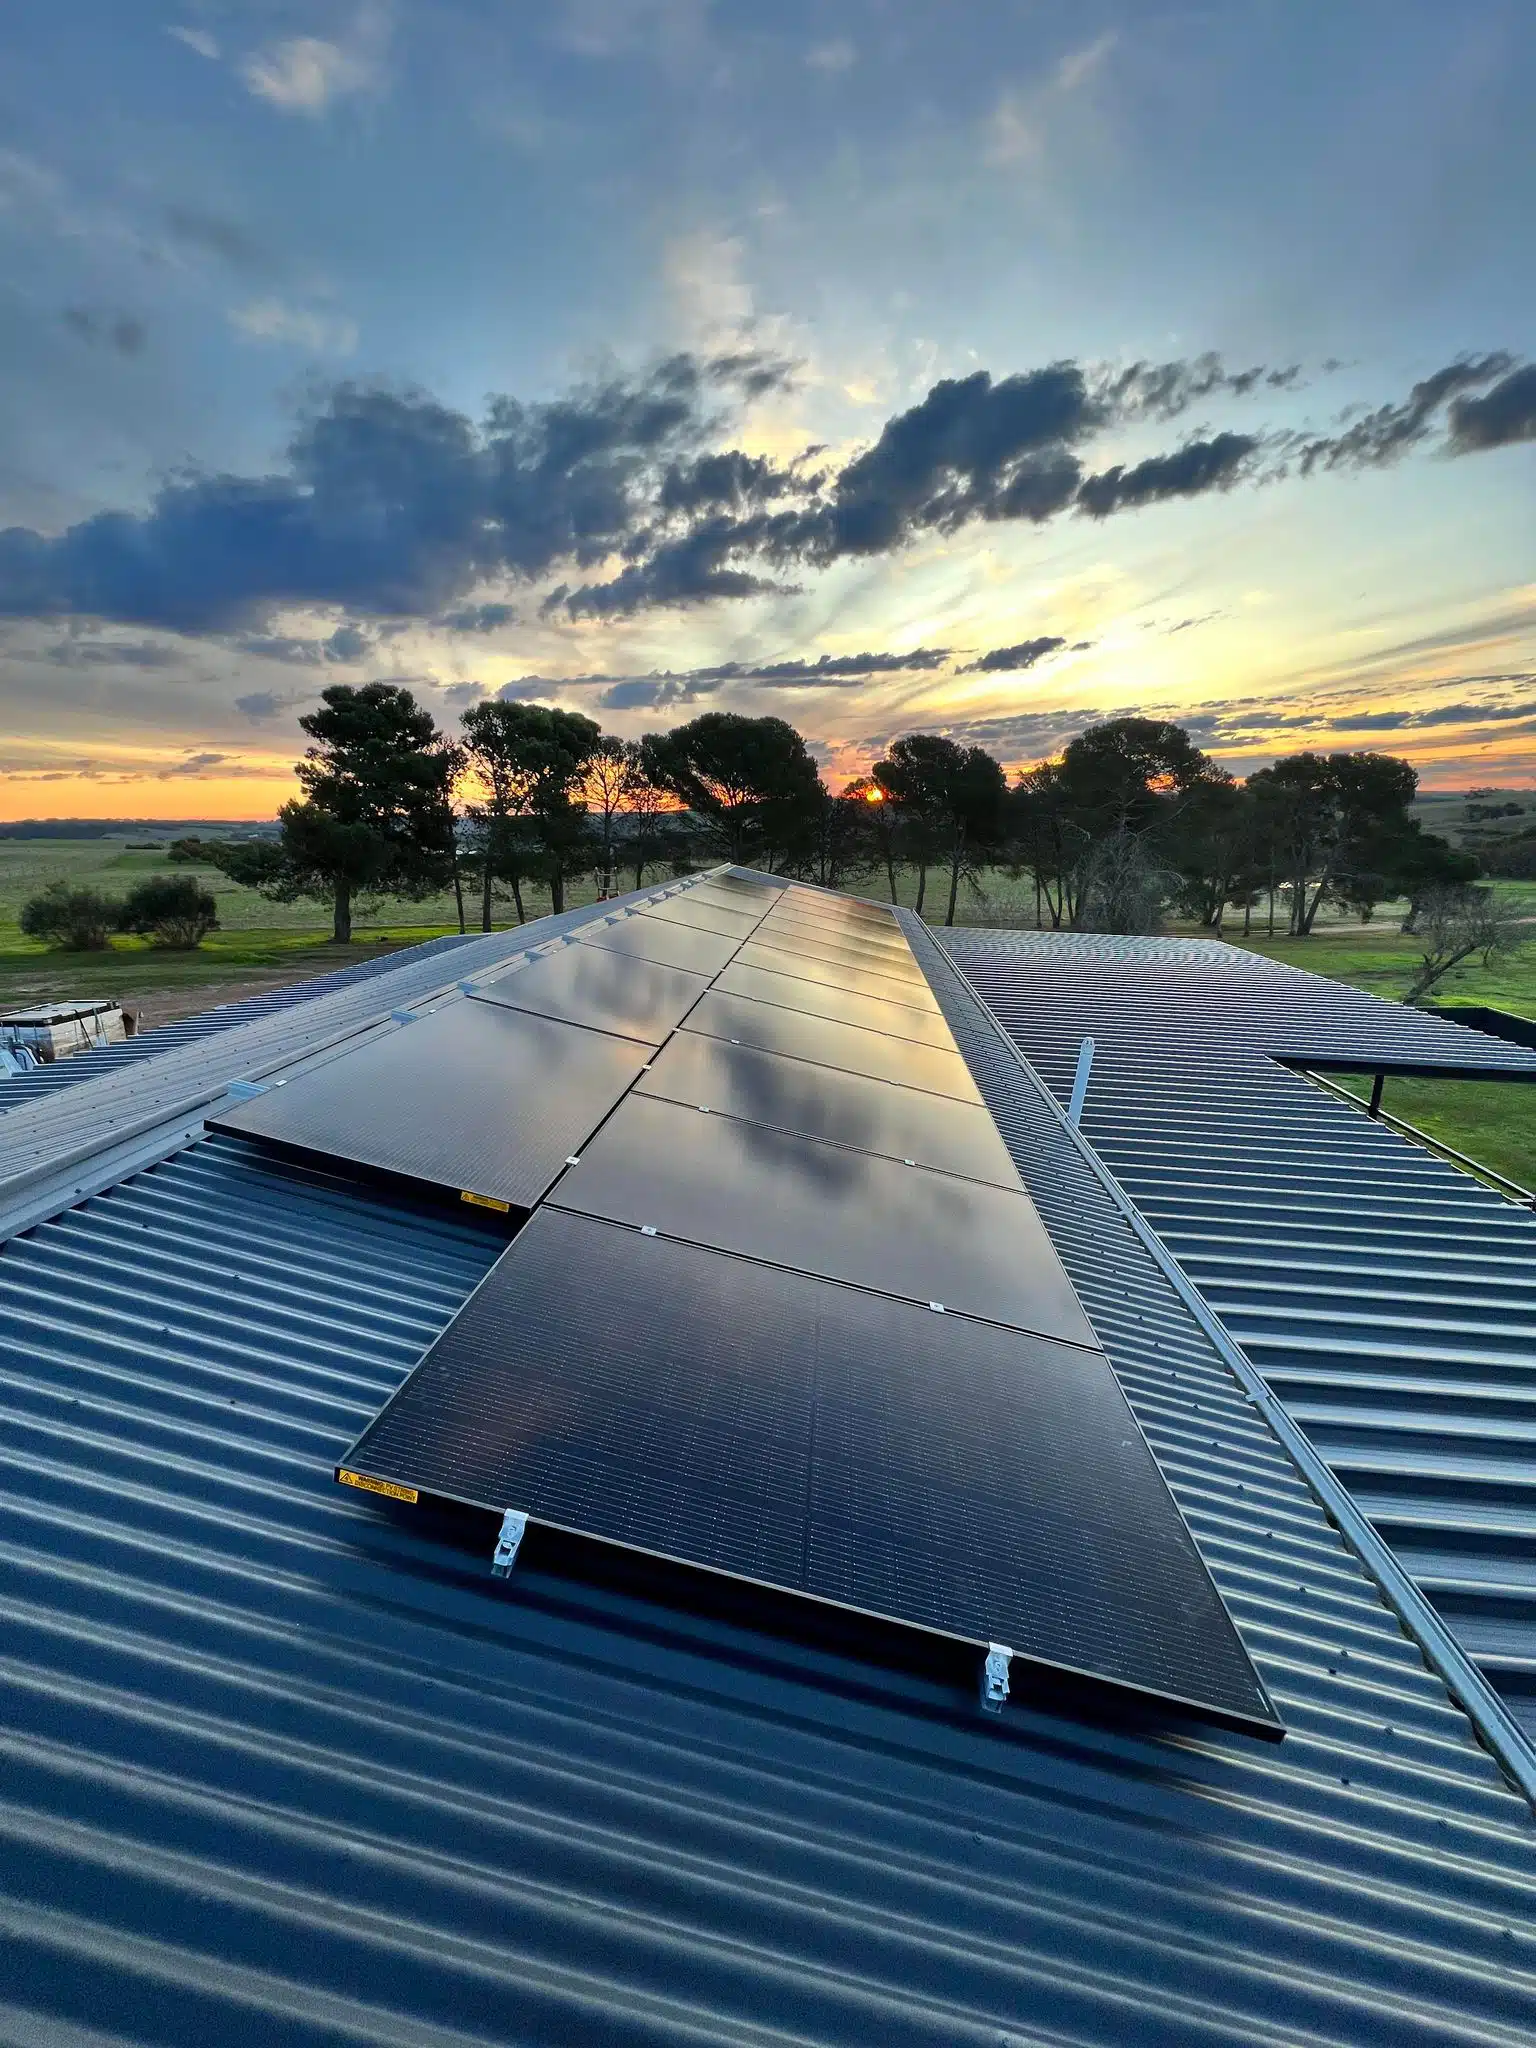 SunEnergy installed solar panels